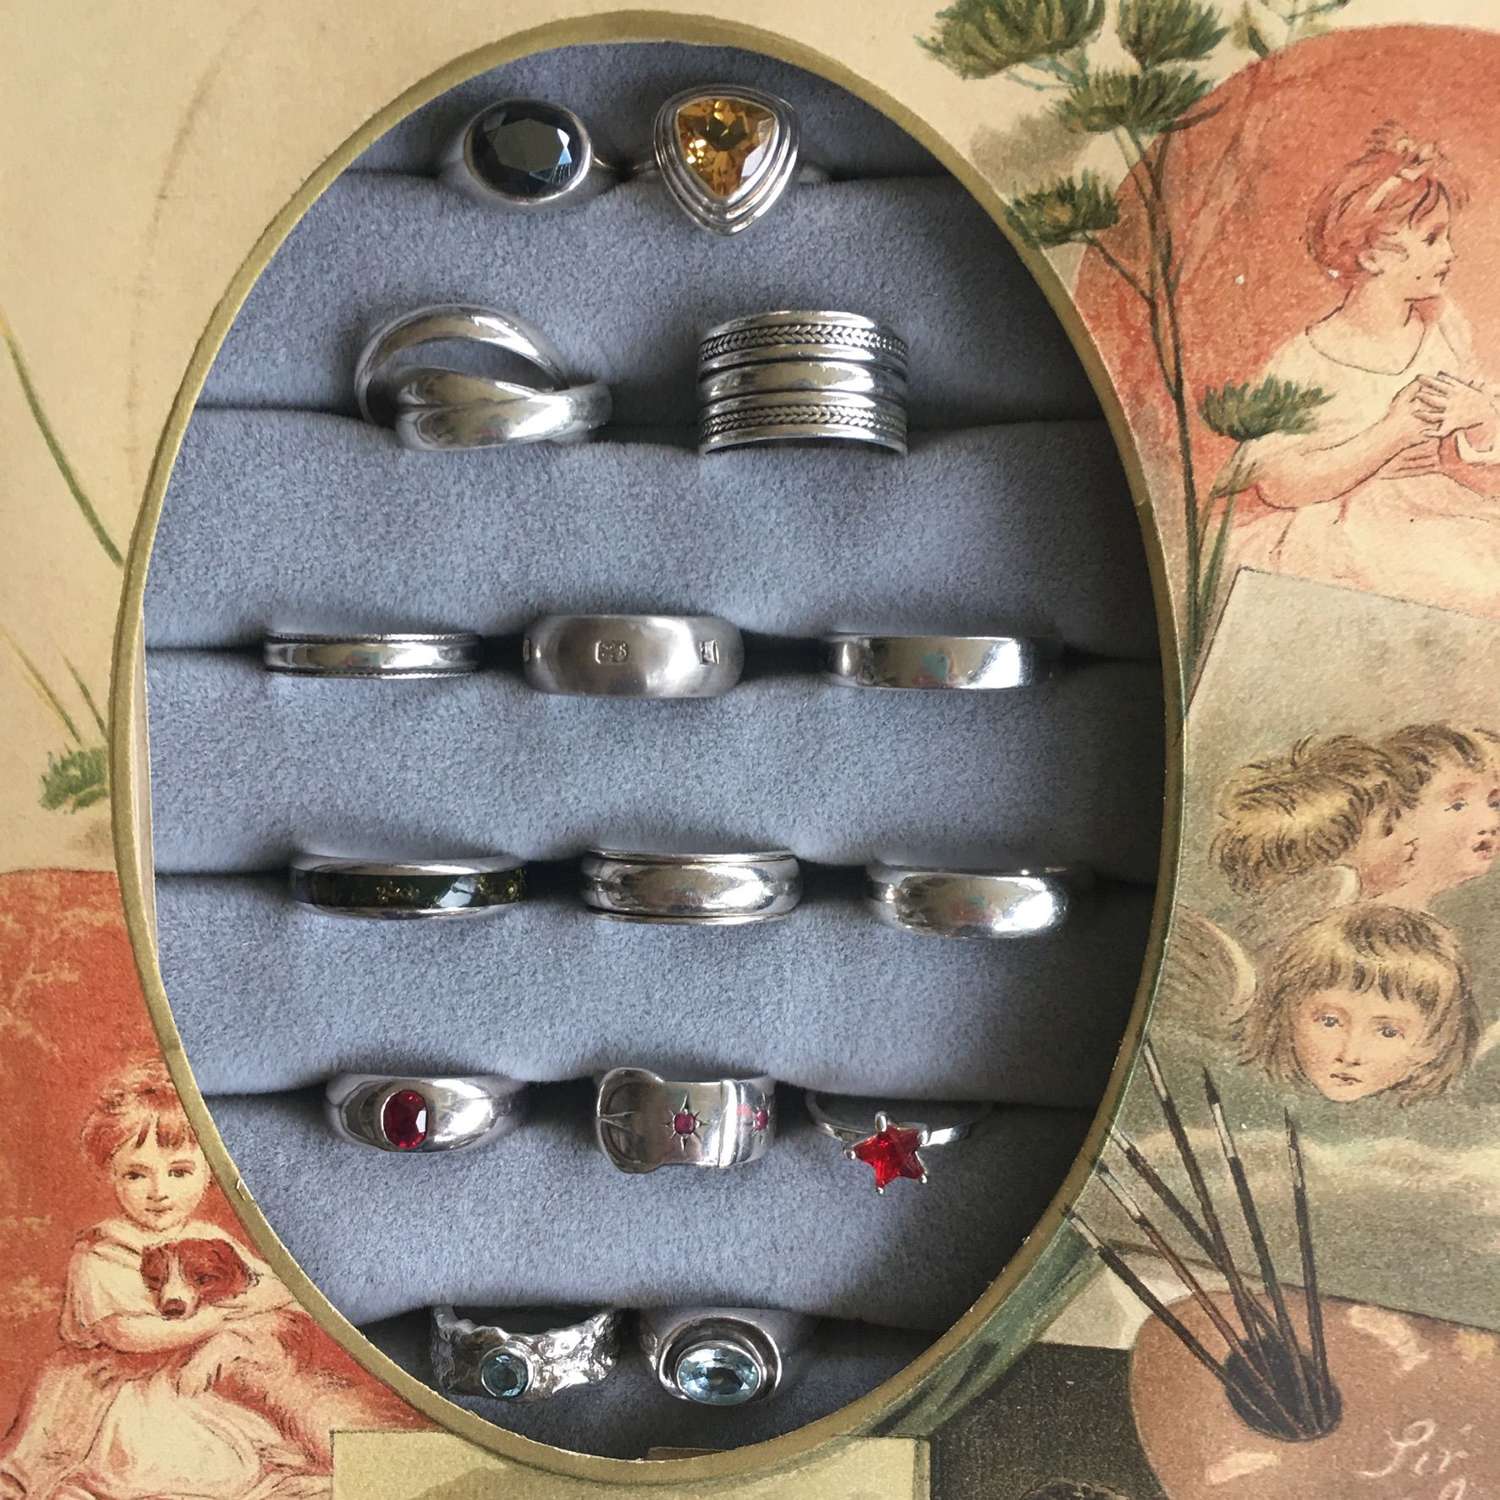 Jewellery Flatlay 18 - Silver rings